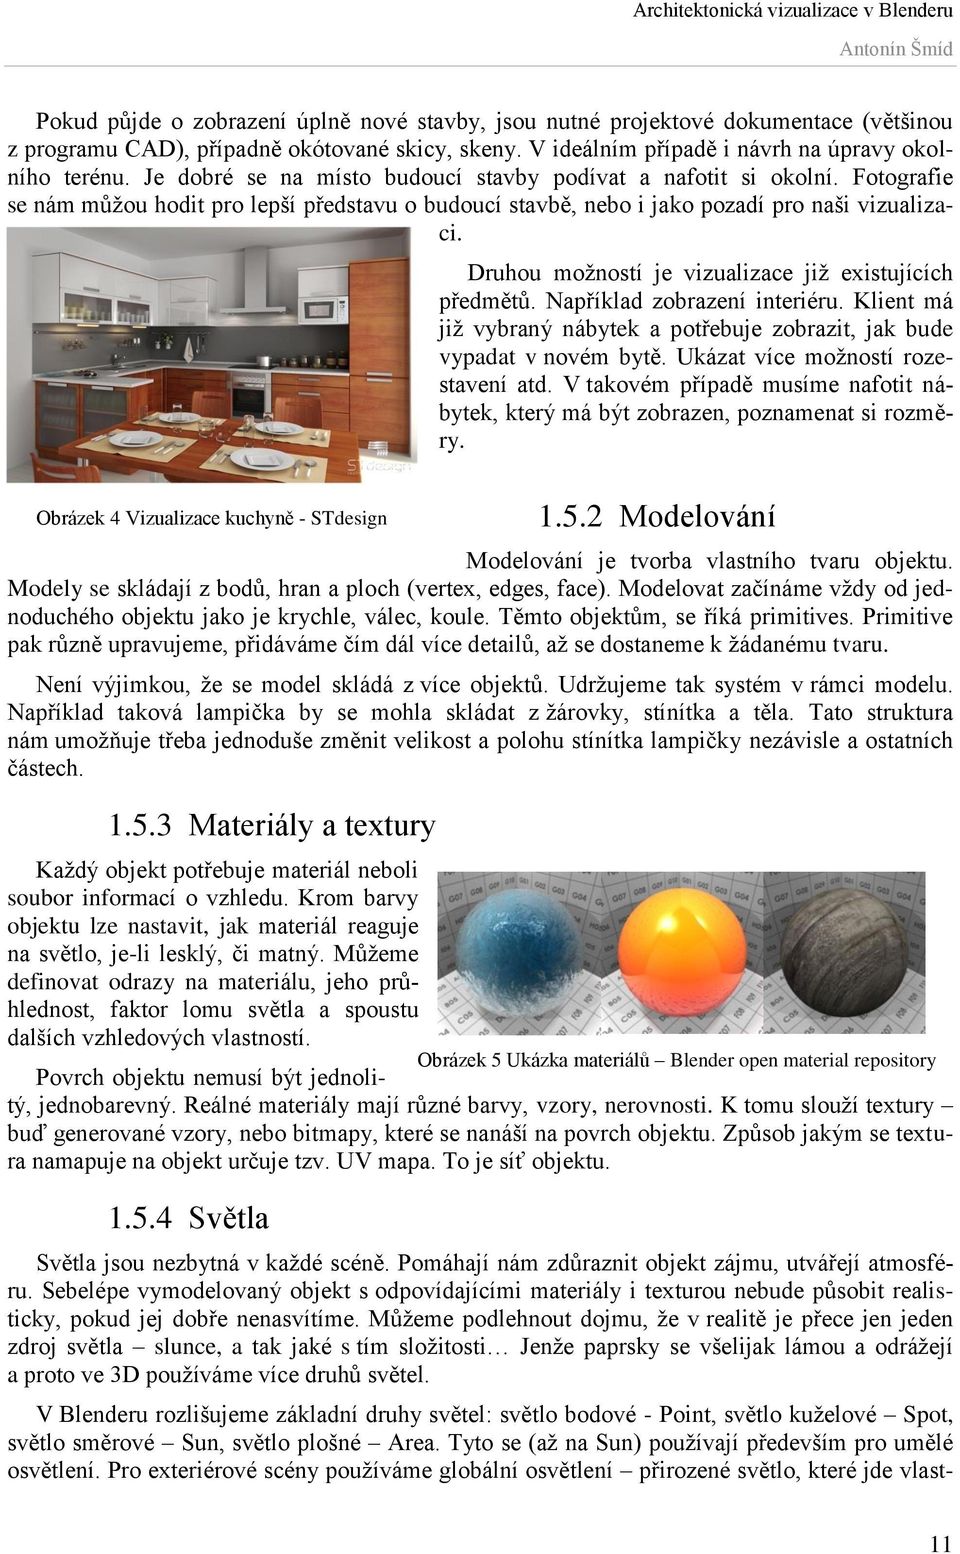 Obrázek 4 Vizualizace kuchyně - STdesign Druhou možností je vizualizace již existujících předmětů. Například zobrazení interiéru.